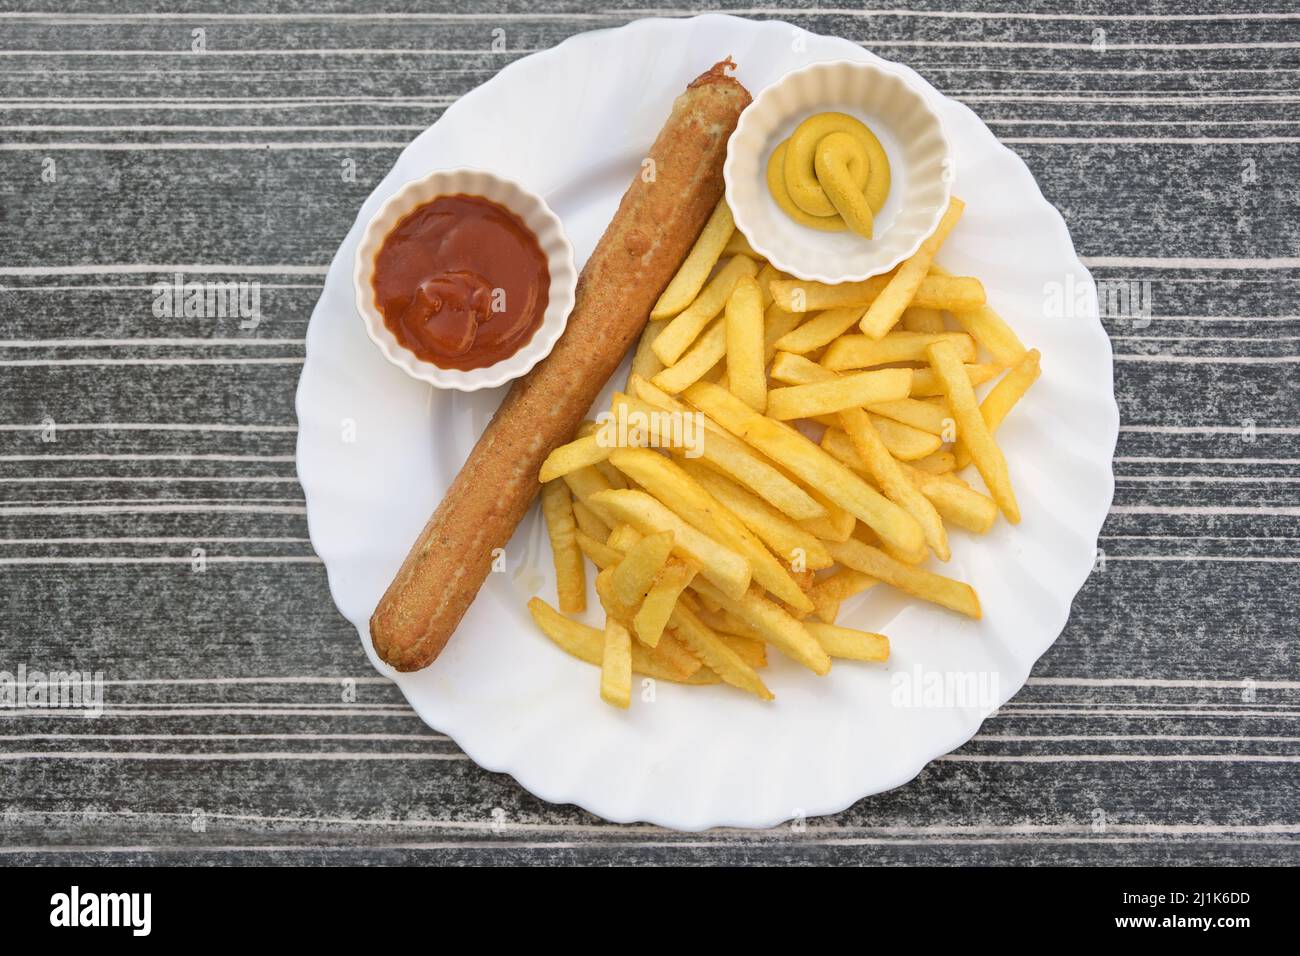 Gegrillte Wurst oder deutsche Bratwurst und Pommes frites mit Ketchup und Senf auf einem Teller, ungesunde Fast Food, aus der Sicht von oben, ausgewählte fo Stockfoto